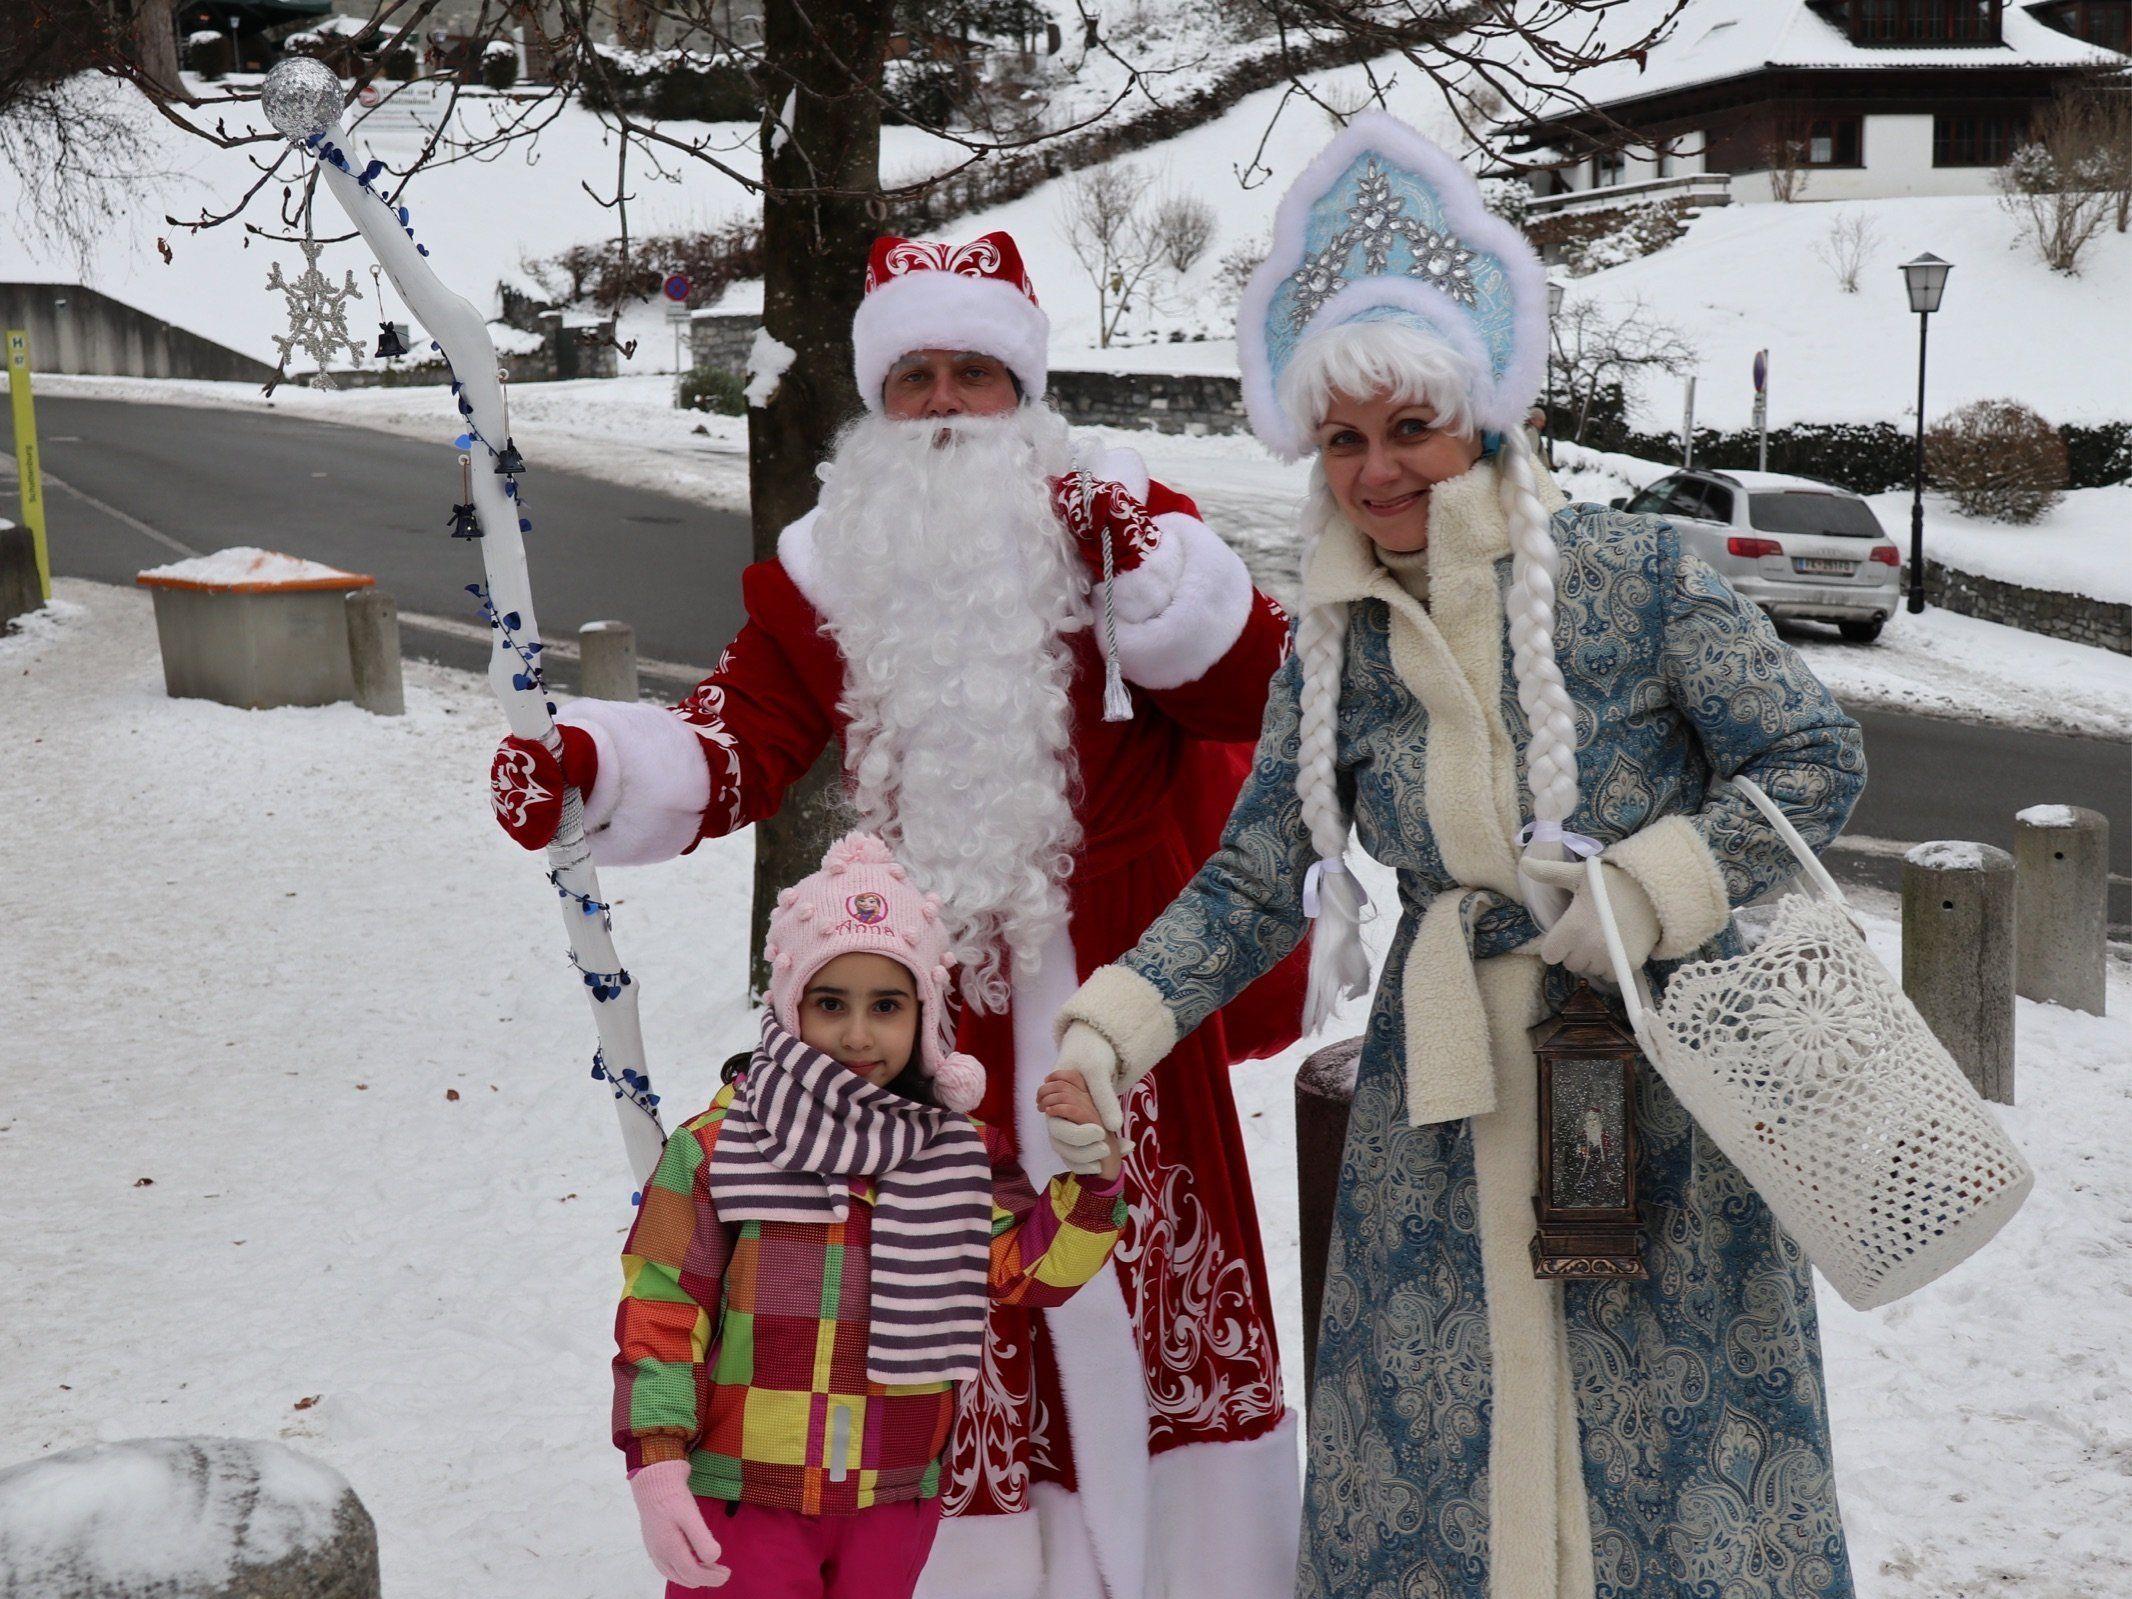 Väterchen Frost und Schneeflöckchen erfreuten auch das in Feldkirch lebende Flüchtlingsgsmädchen Ghina aus Syrien.